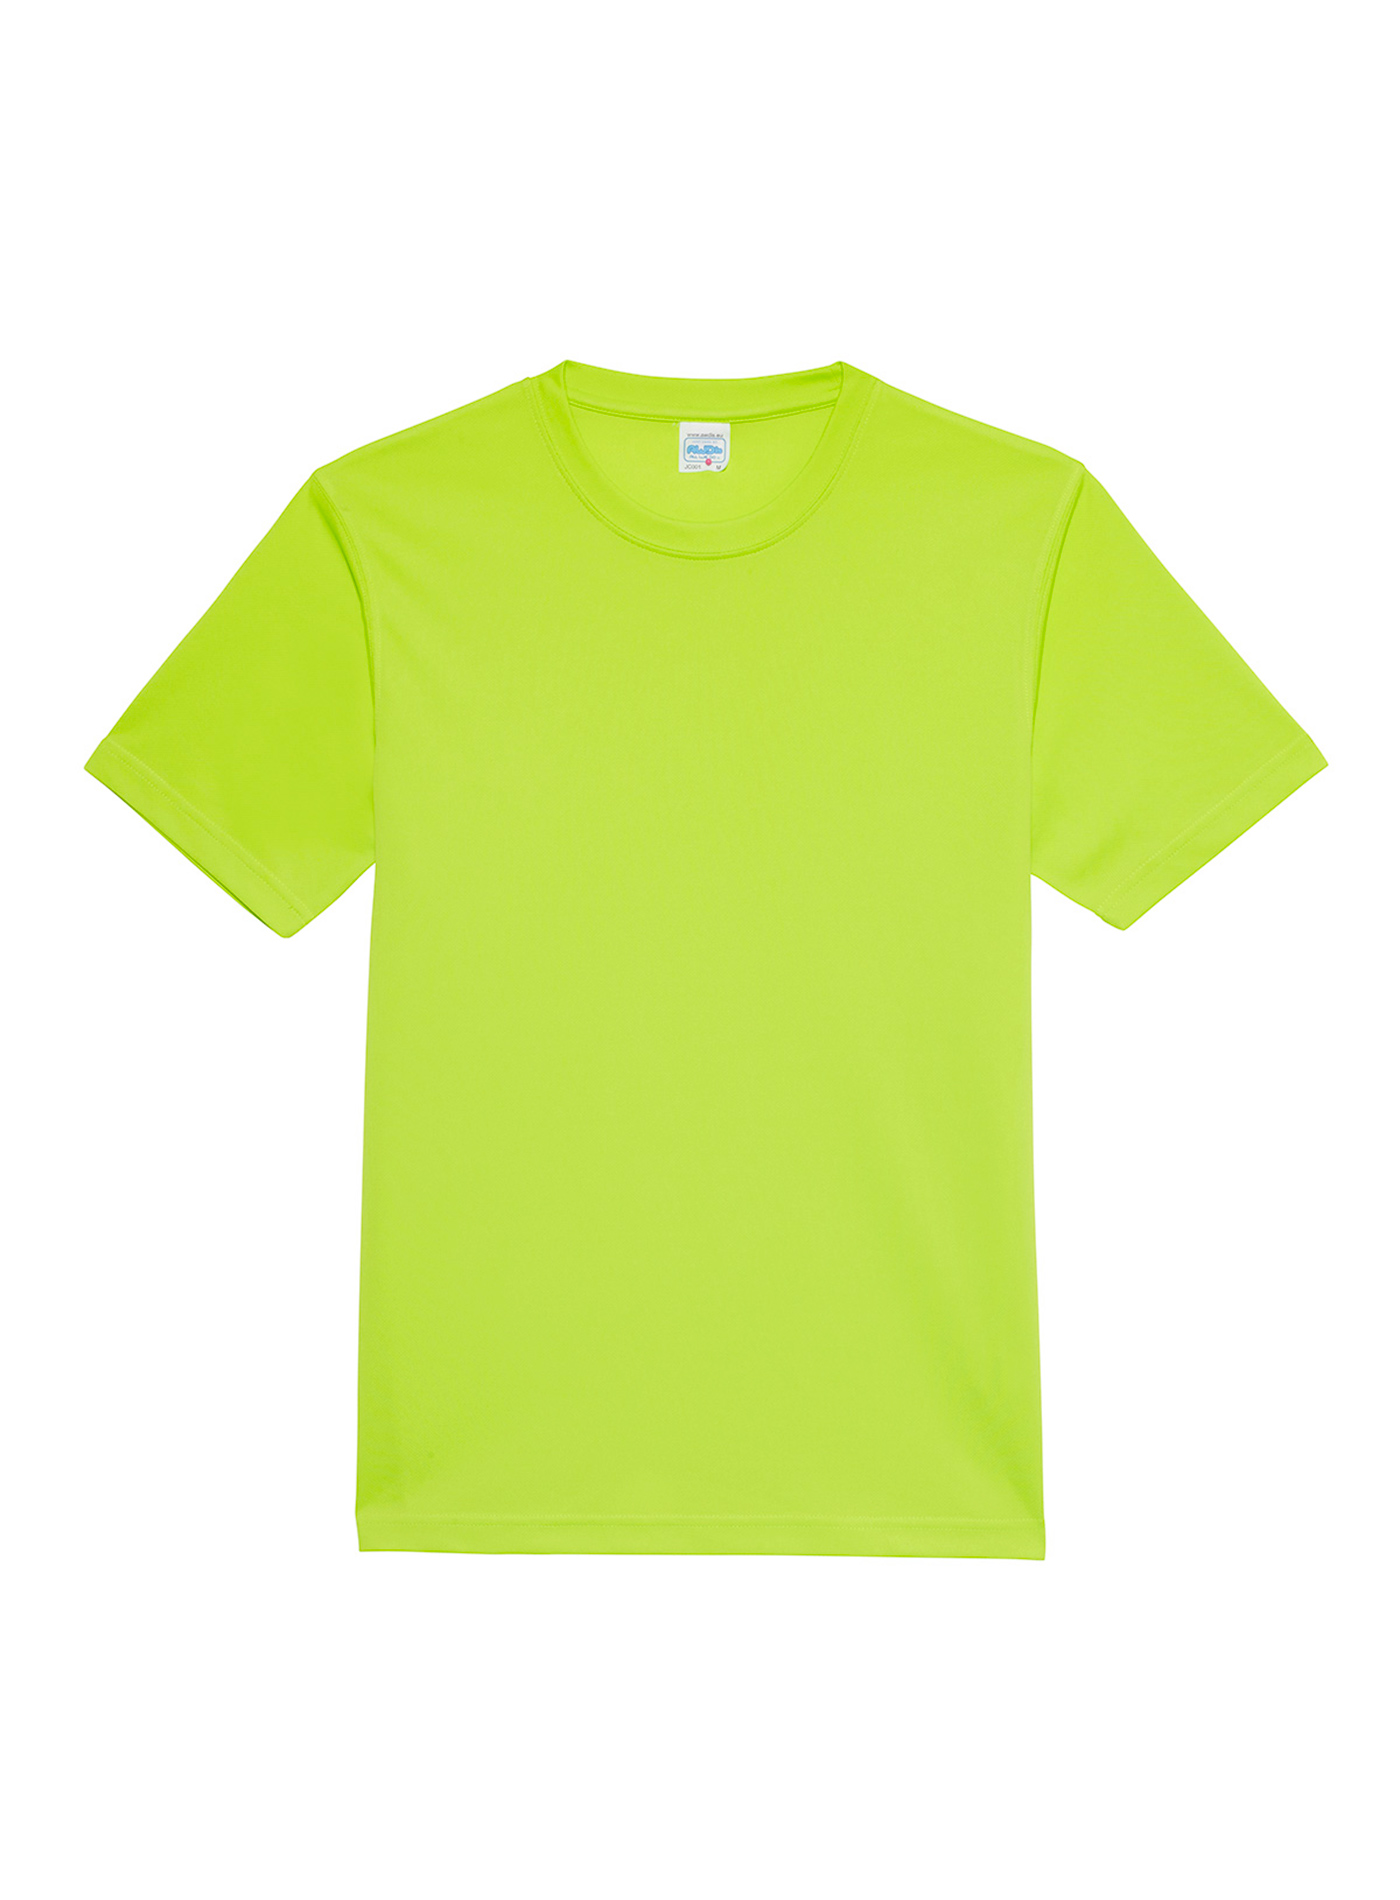 Unisex tričko Neonlight - Neonová zelená M